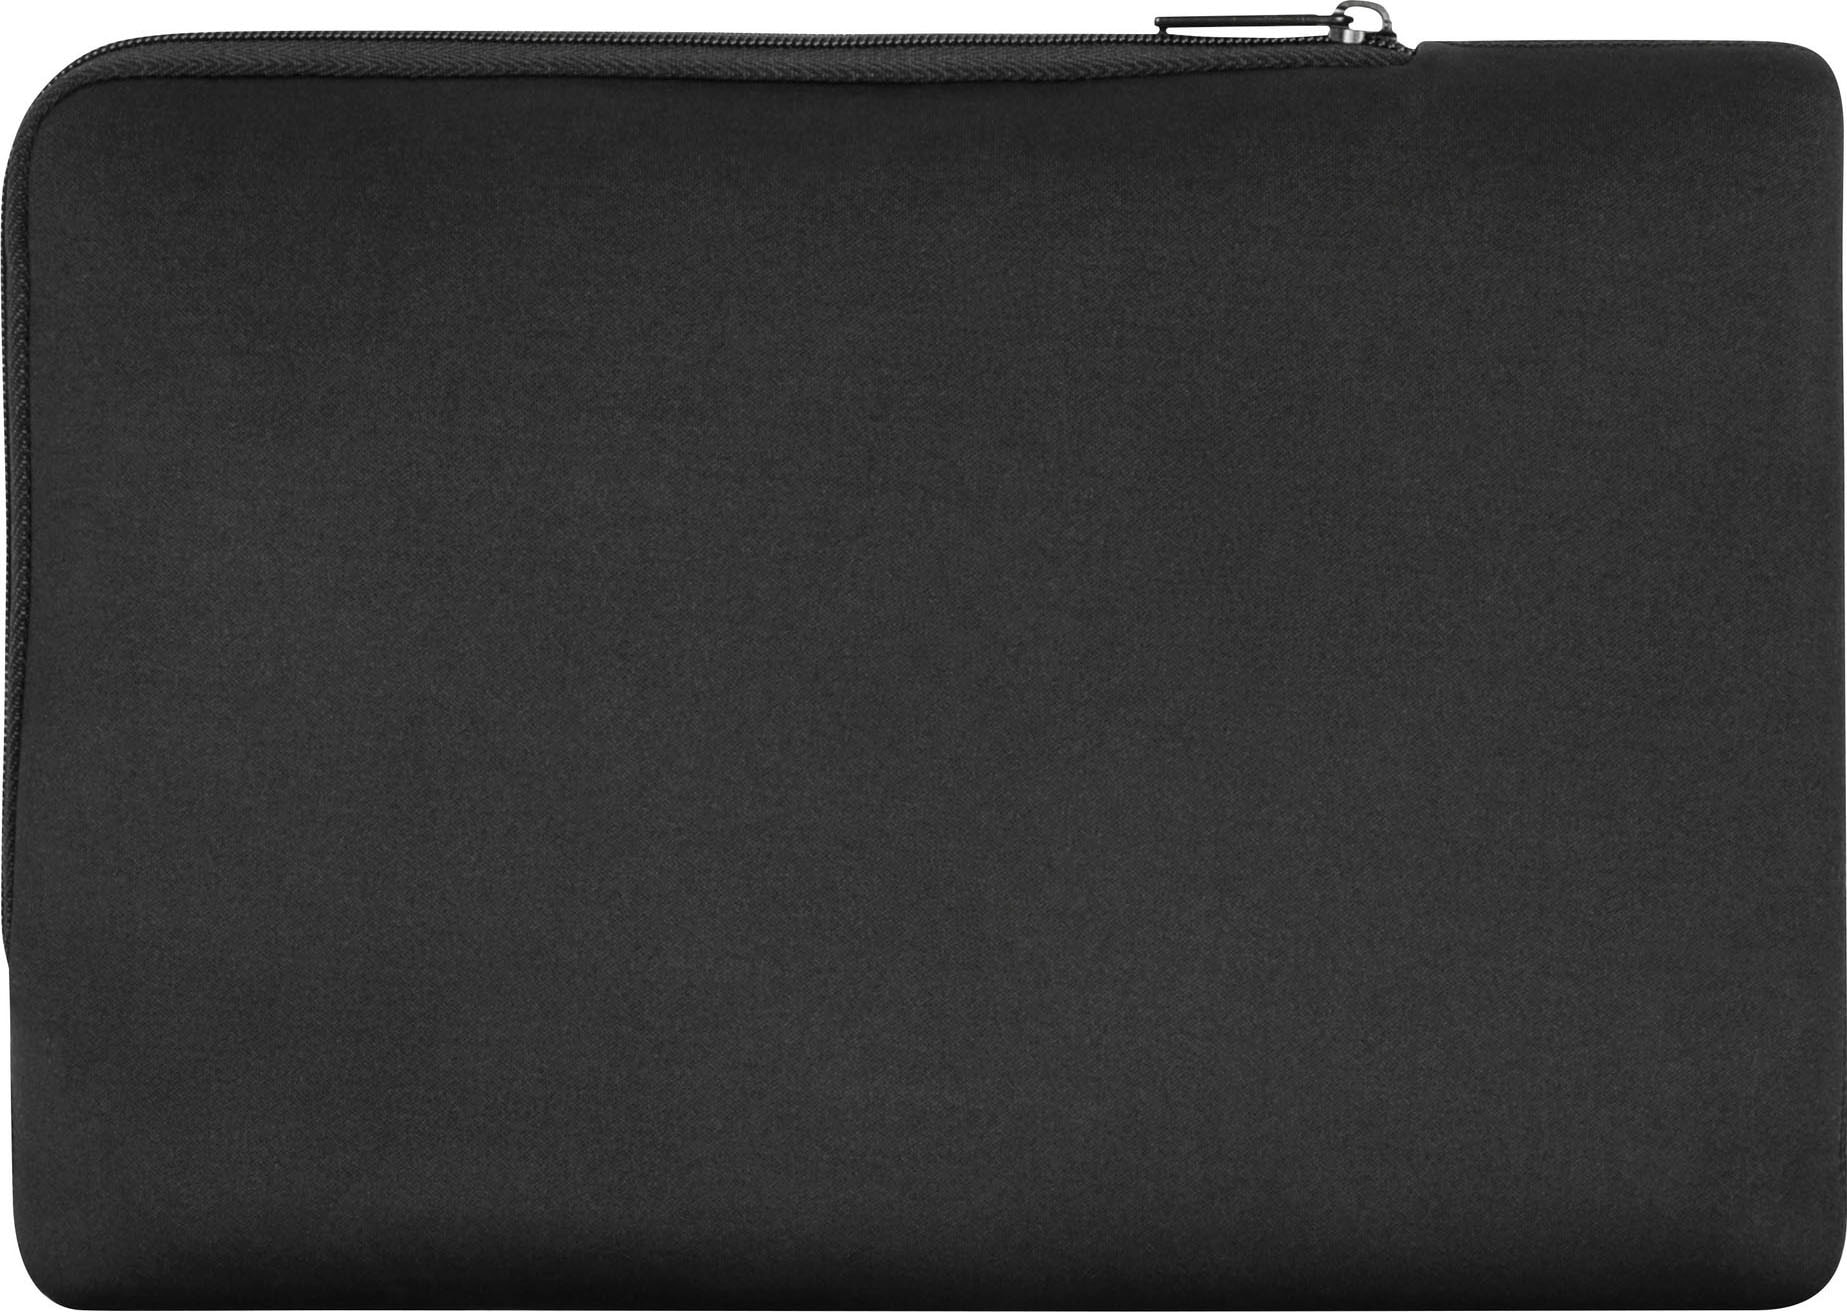 Targus Sleeve »15-16 Ecosmart Multi-Fit sleeve«, 40,6 cm (16 Zoll)